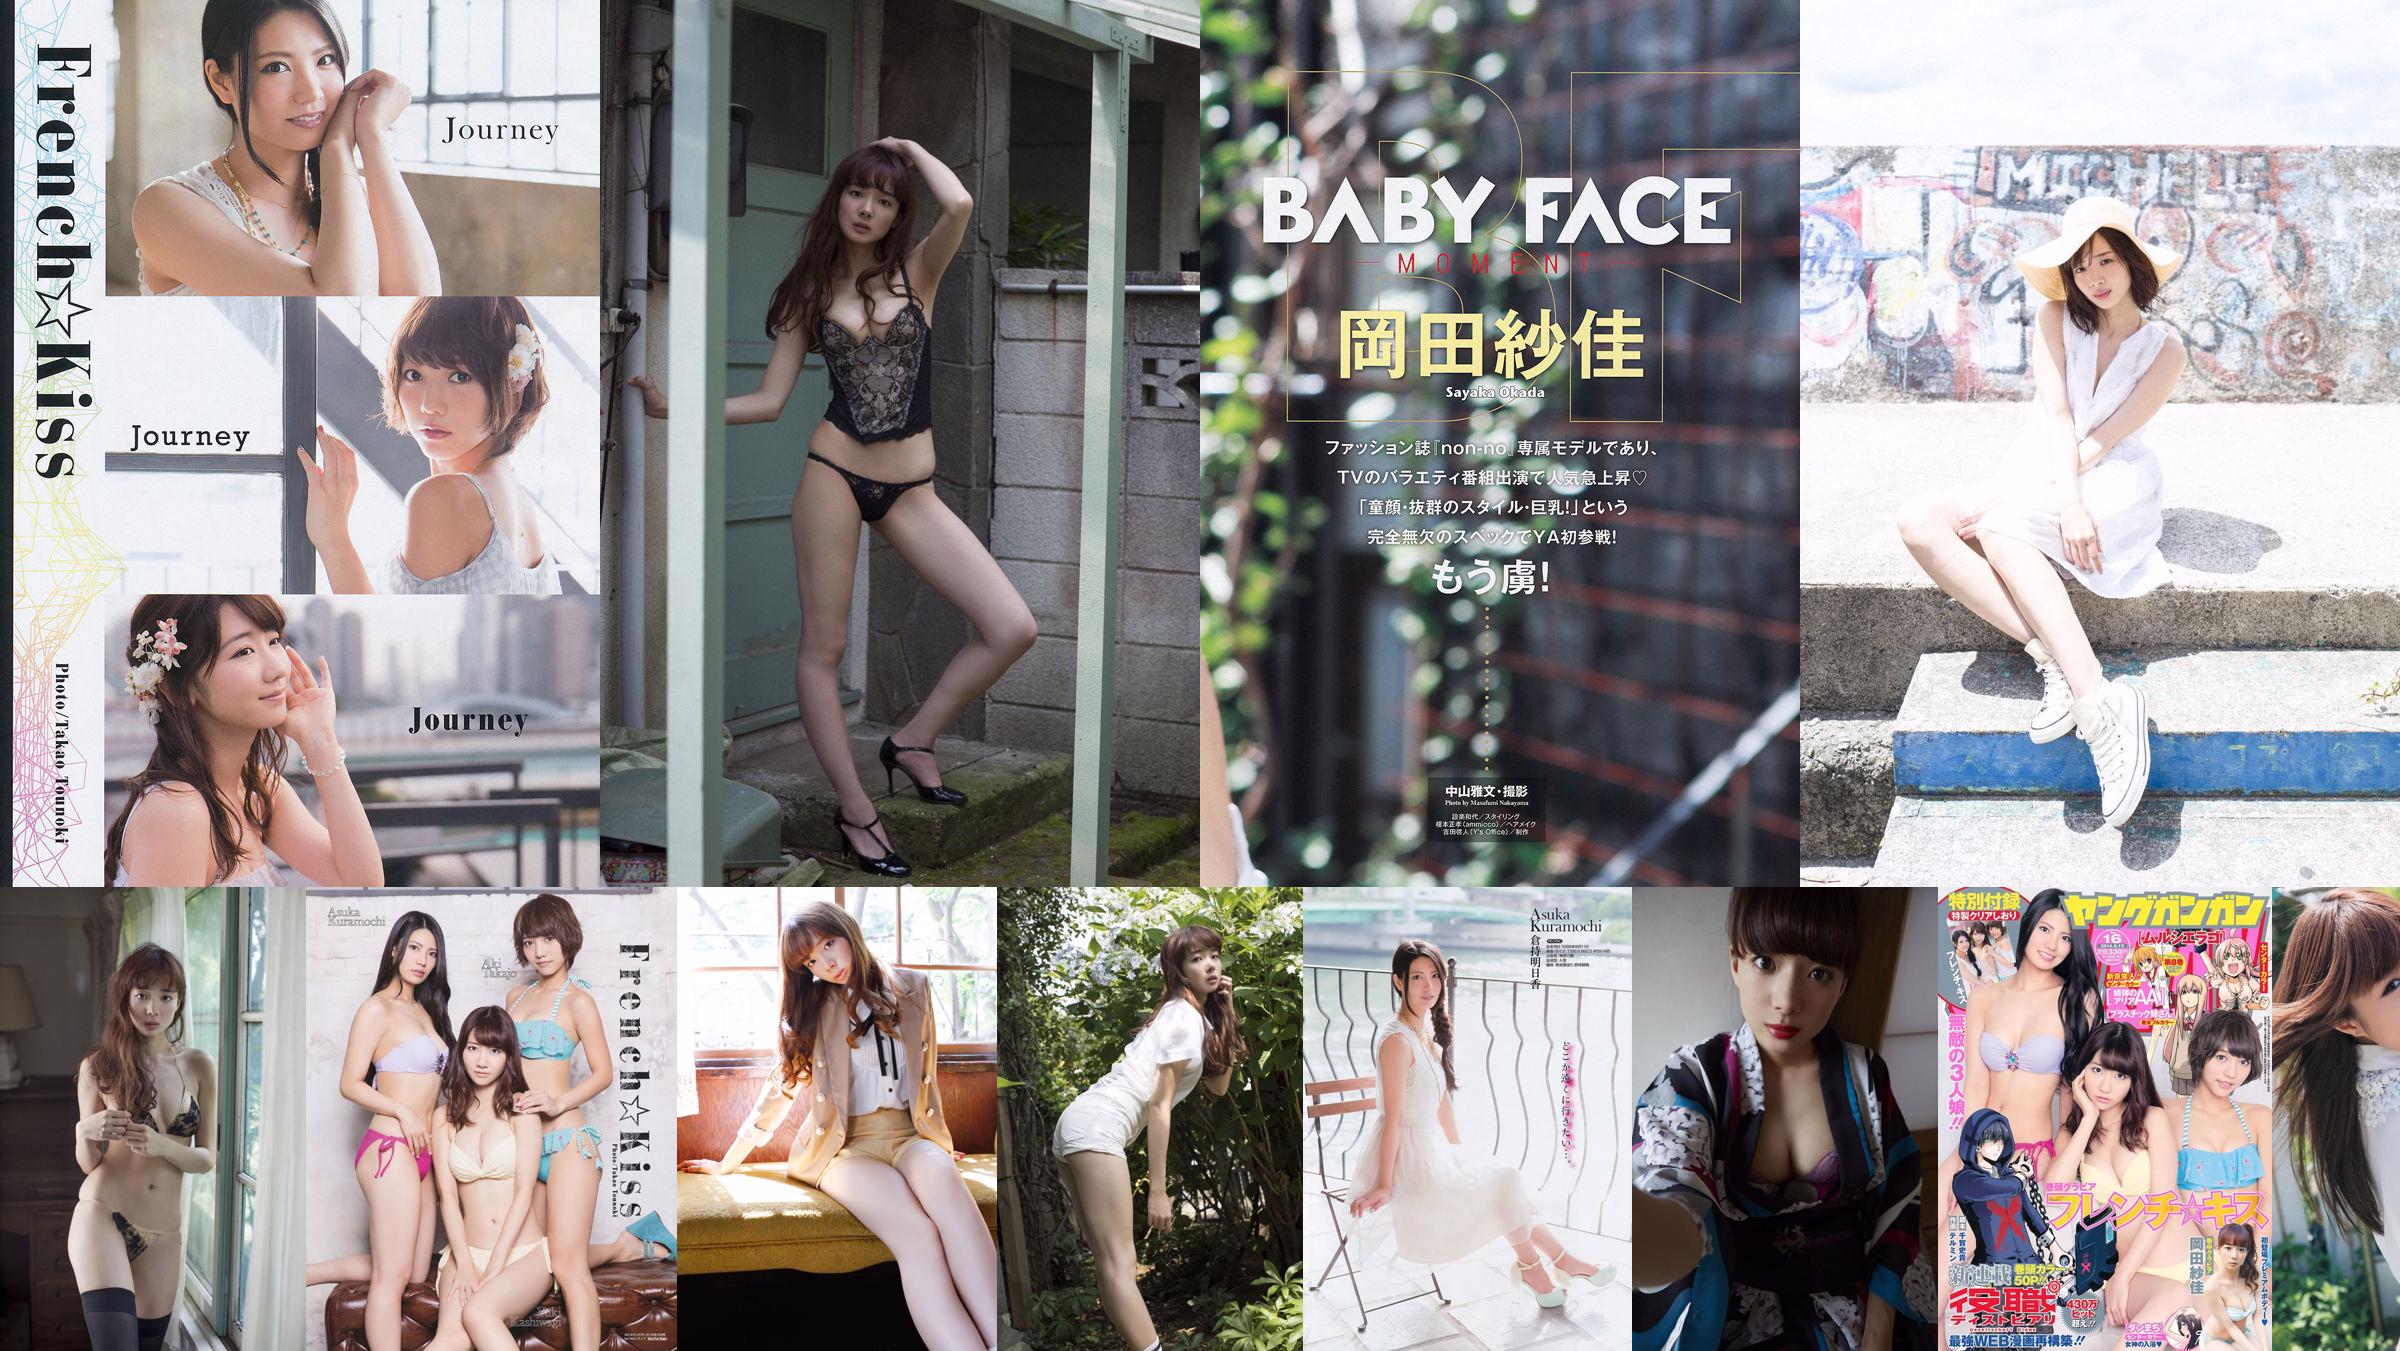 Saka Okada "Perfect Body" [WPB-net] Extra645 No.3ac11c Page 1